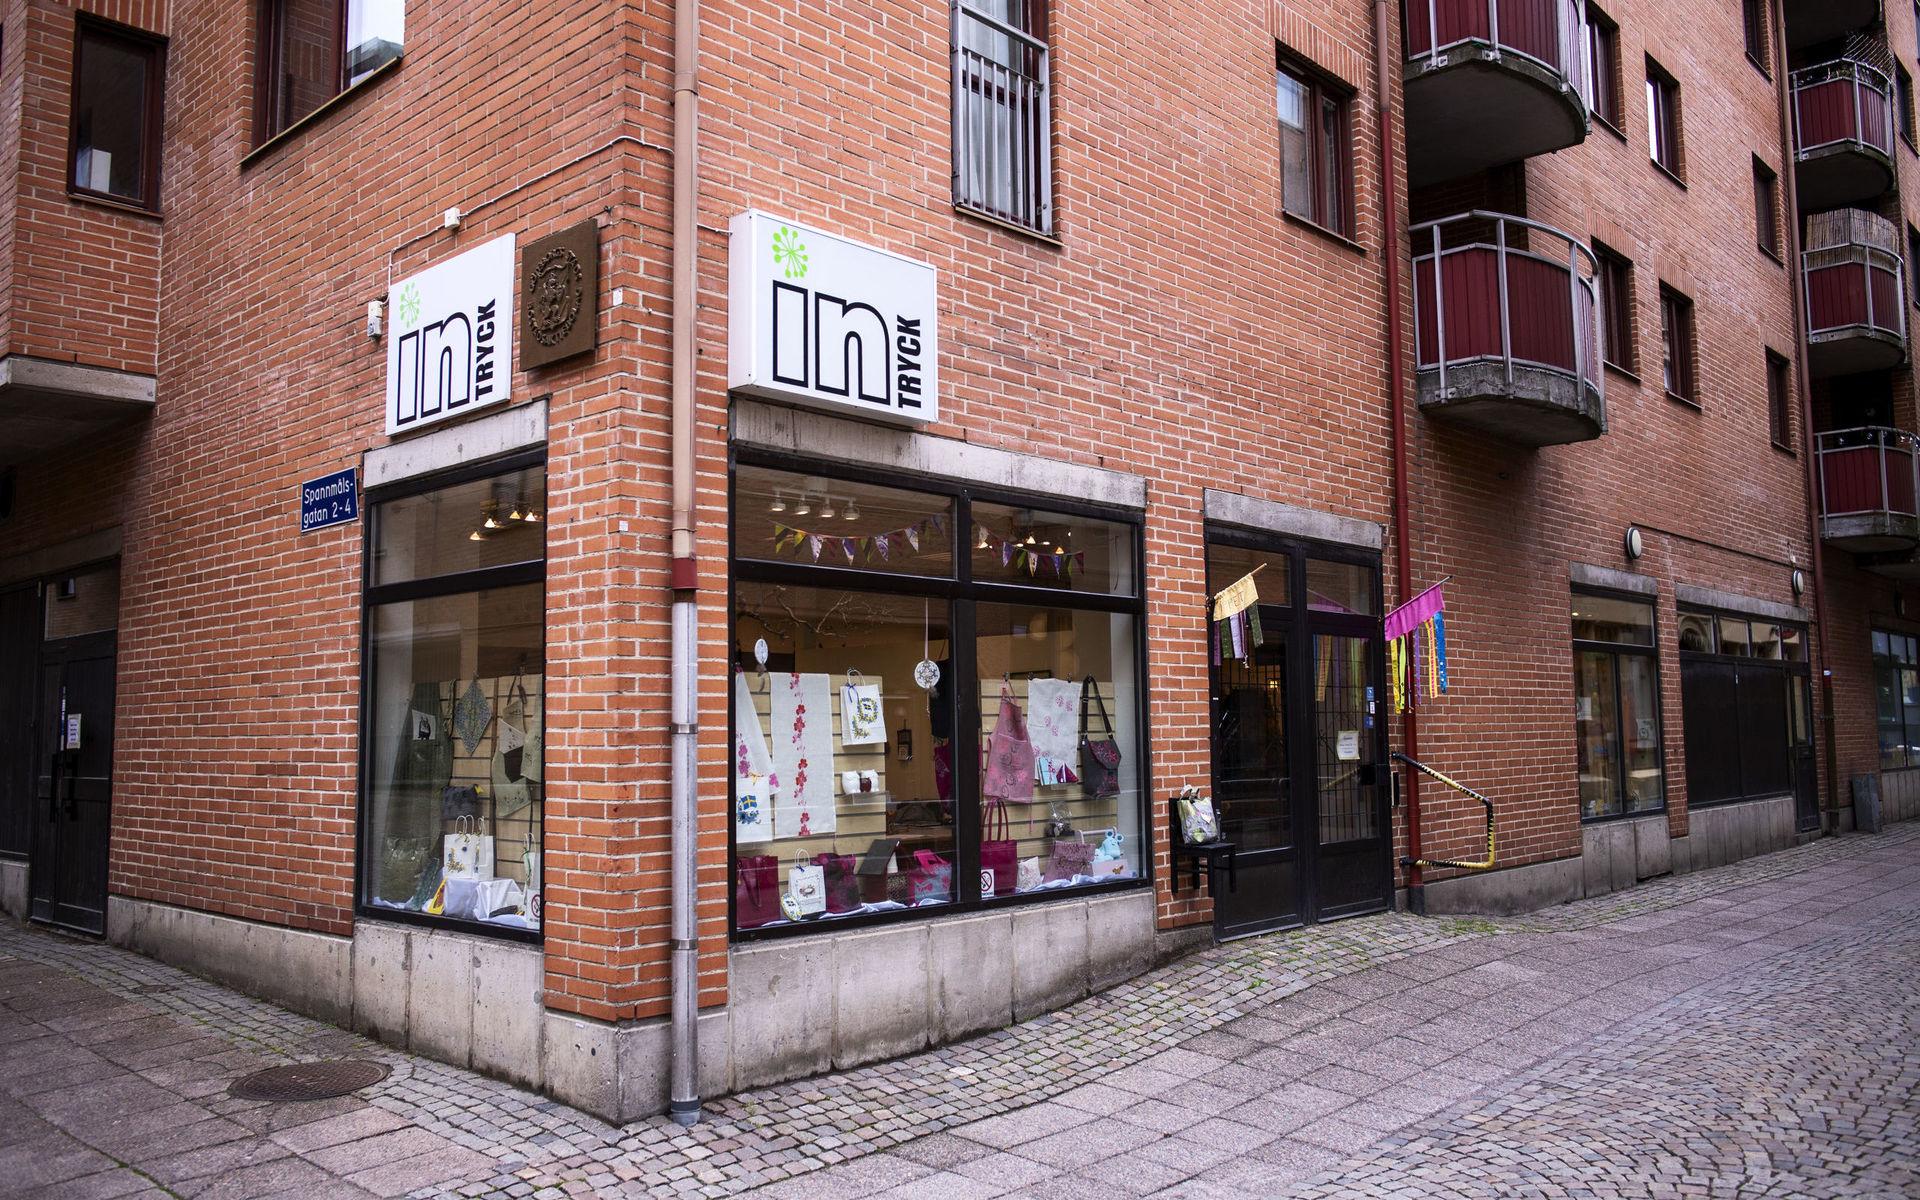 Intryck ligger på Torggatan i centrala Göteborg och säljer produkter från den egna verksamheten och andra dagliga verksamheter.